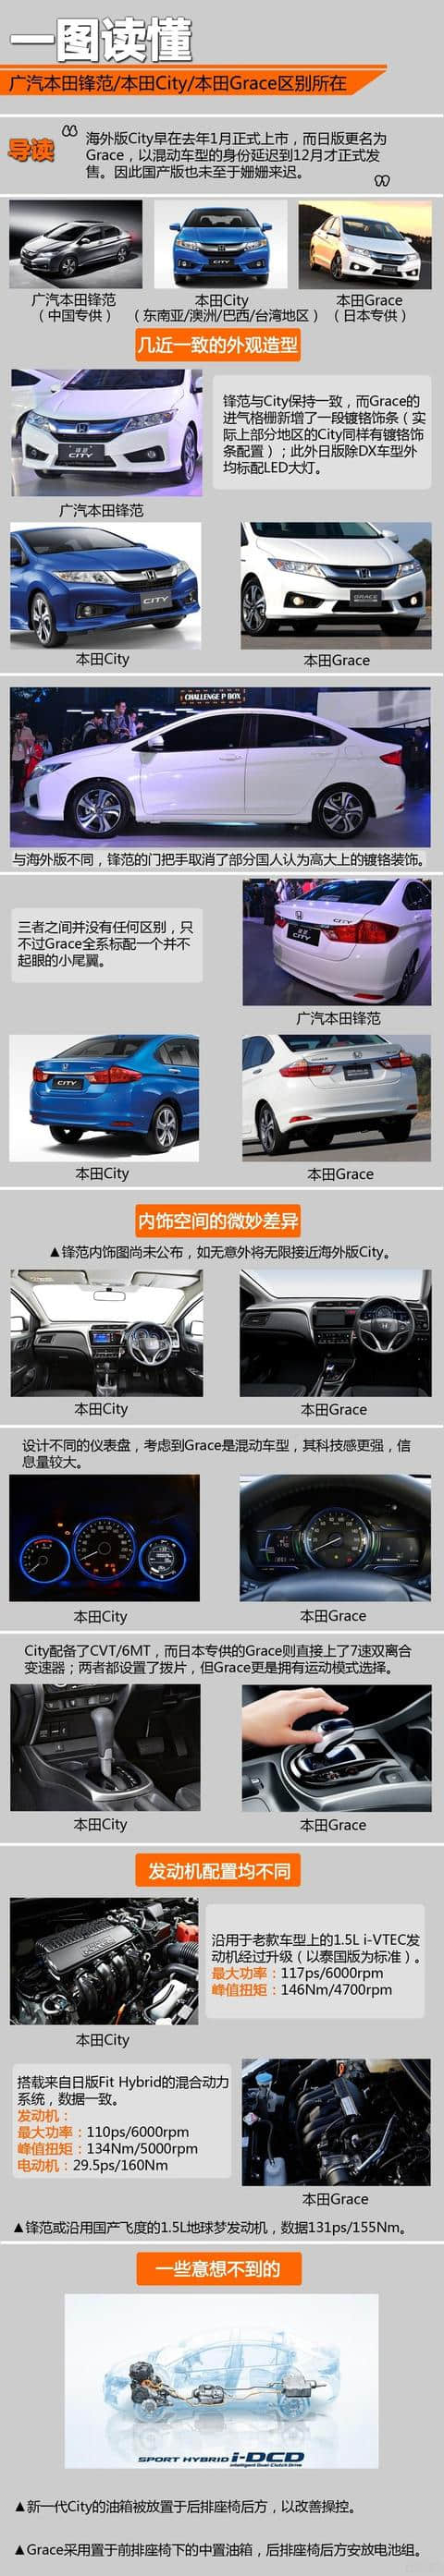 撘1.5L发动机 广汽本田全新锋范或8月上市